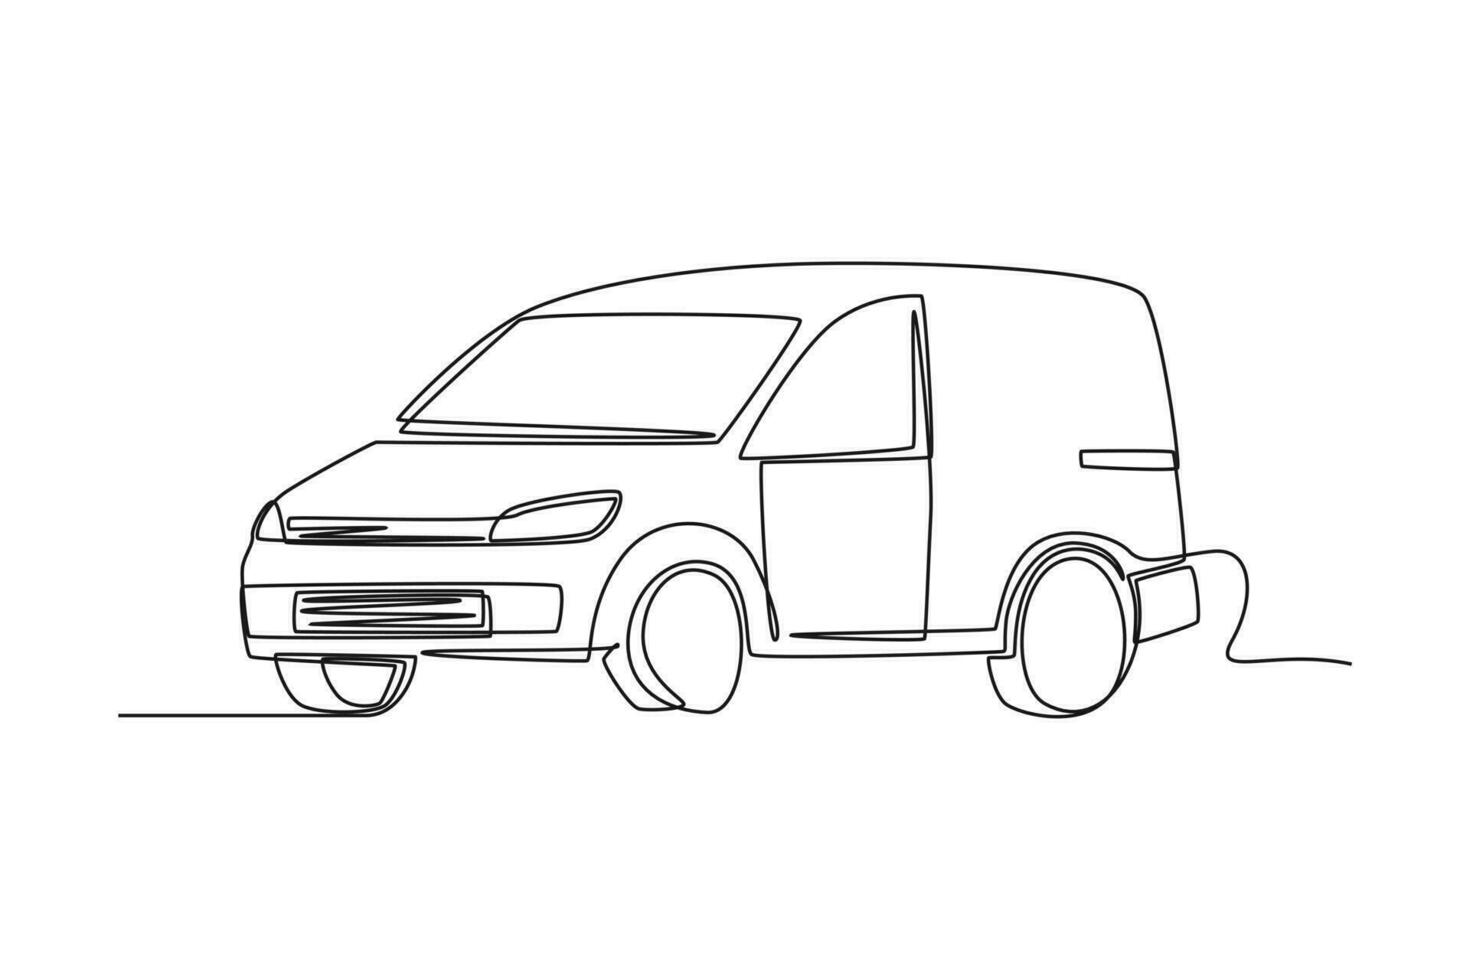 single een lijn tekening levering busje met doos lading. auto concept. doorlopend lijn trek ontwerp grafisch vector illustratie.